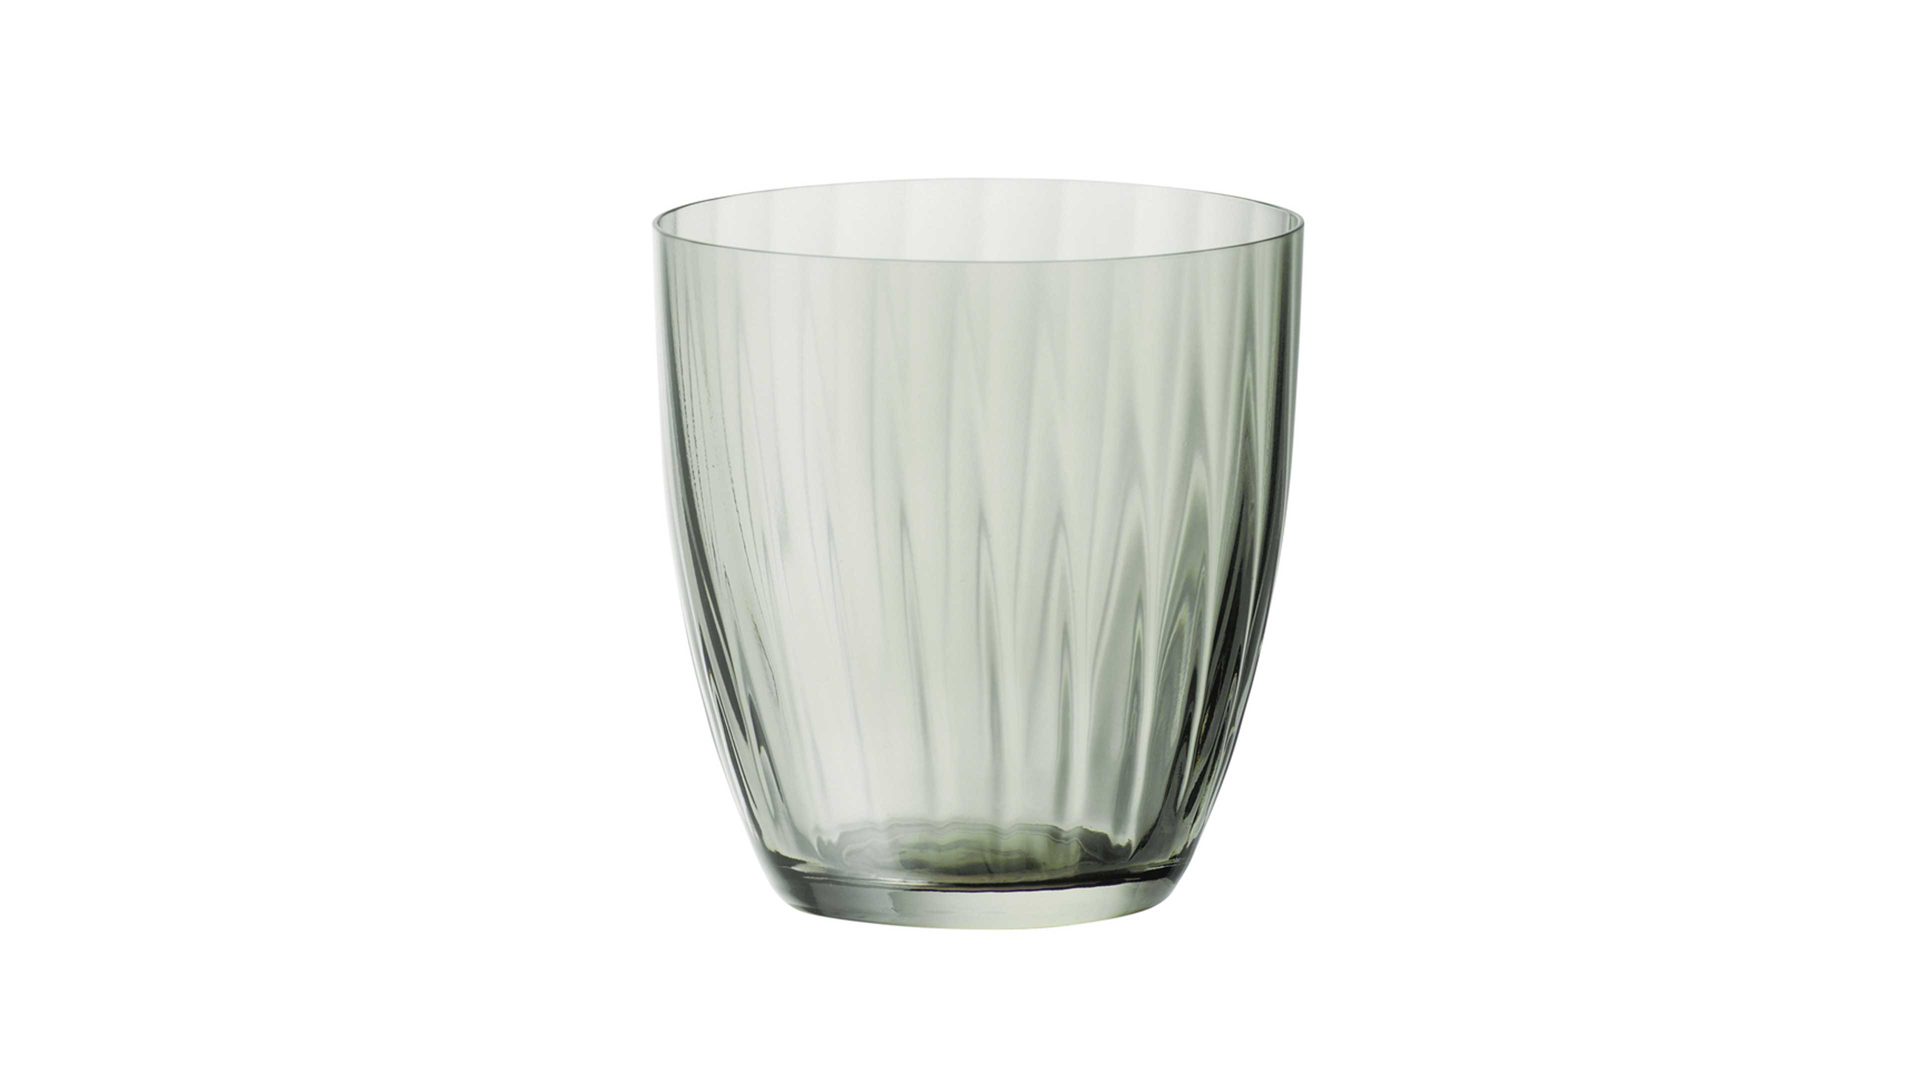 Wasserglas Interliving BEST BUDDYS! aus Glas in Grün Interliving BEST BUDDYS!  Wasserglas Georgia rauchgrünes Kristallglas - ca. 260 ml